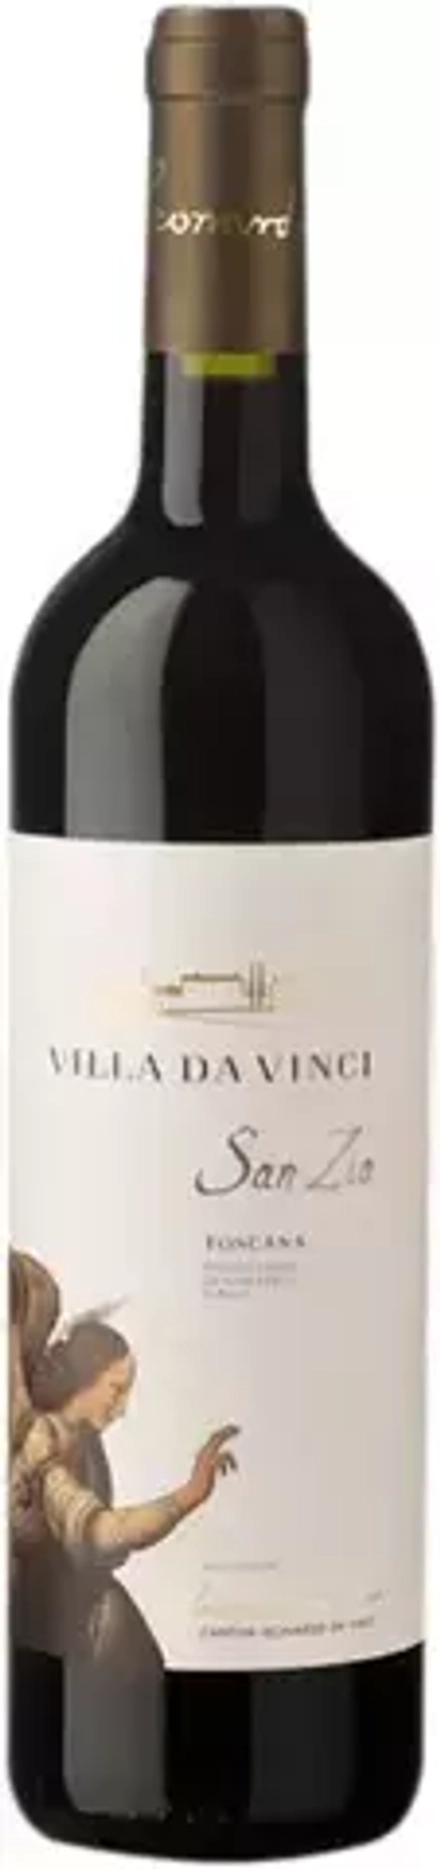 Вино Villa da Vinci San Zio Toscana IGT, 0,75 л.